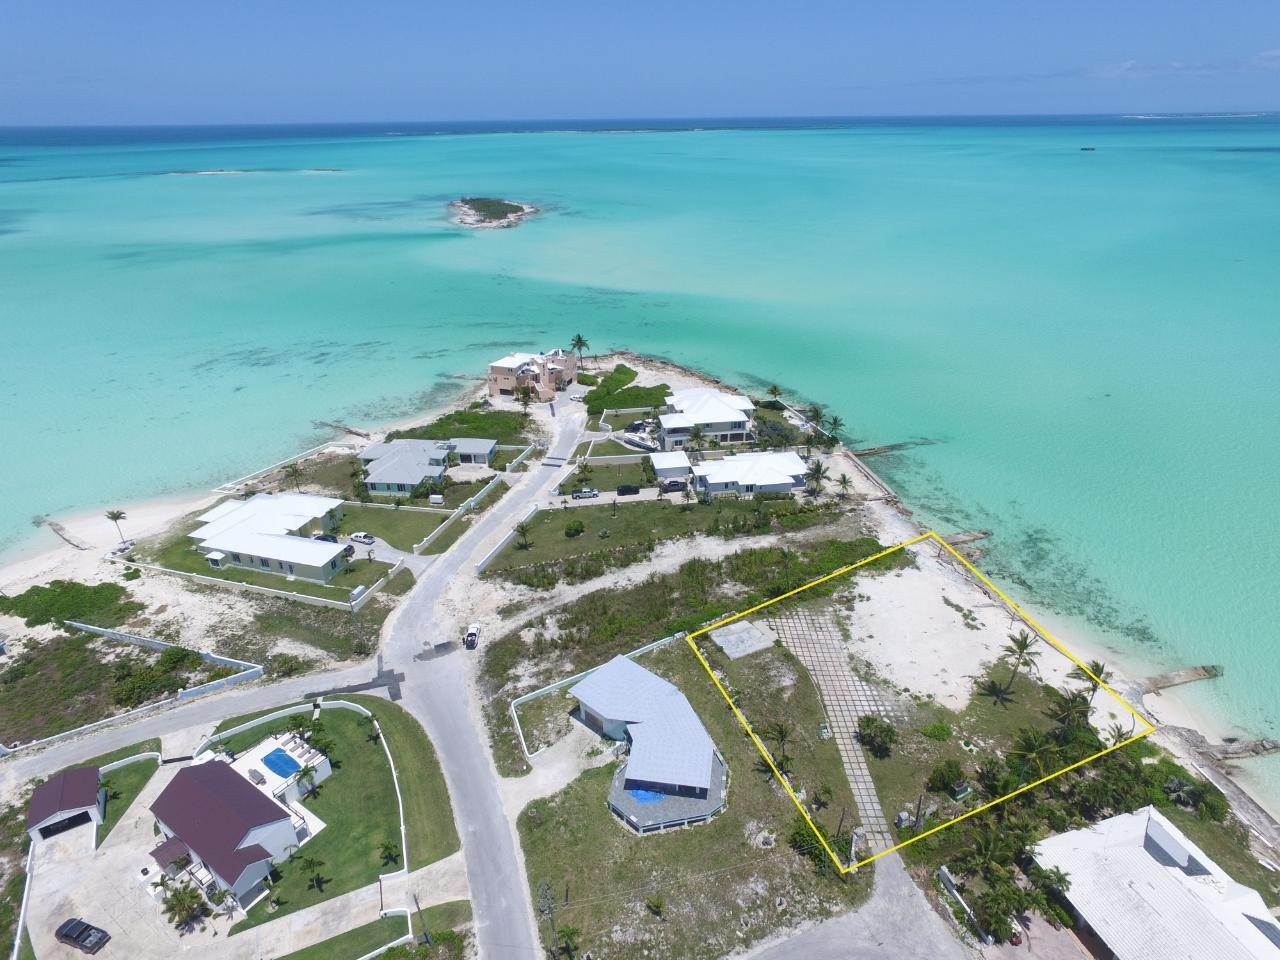 18. Lots / Acreage for Sale at Windward Beach, Treasure Cay, Abaco, Bahamas